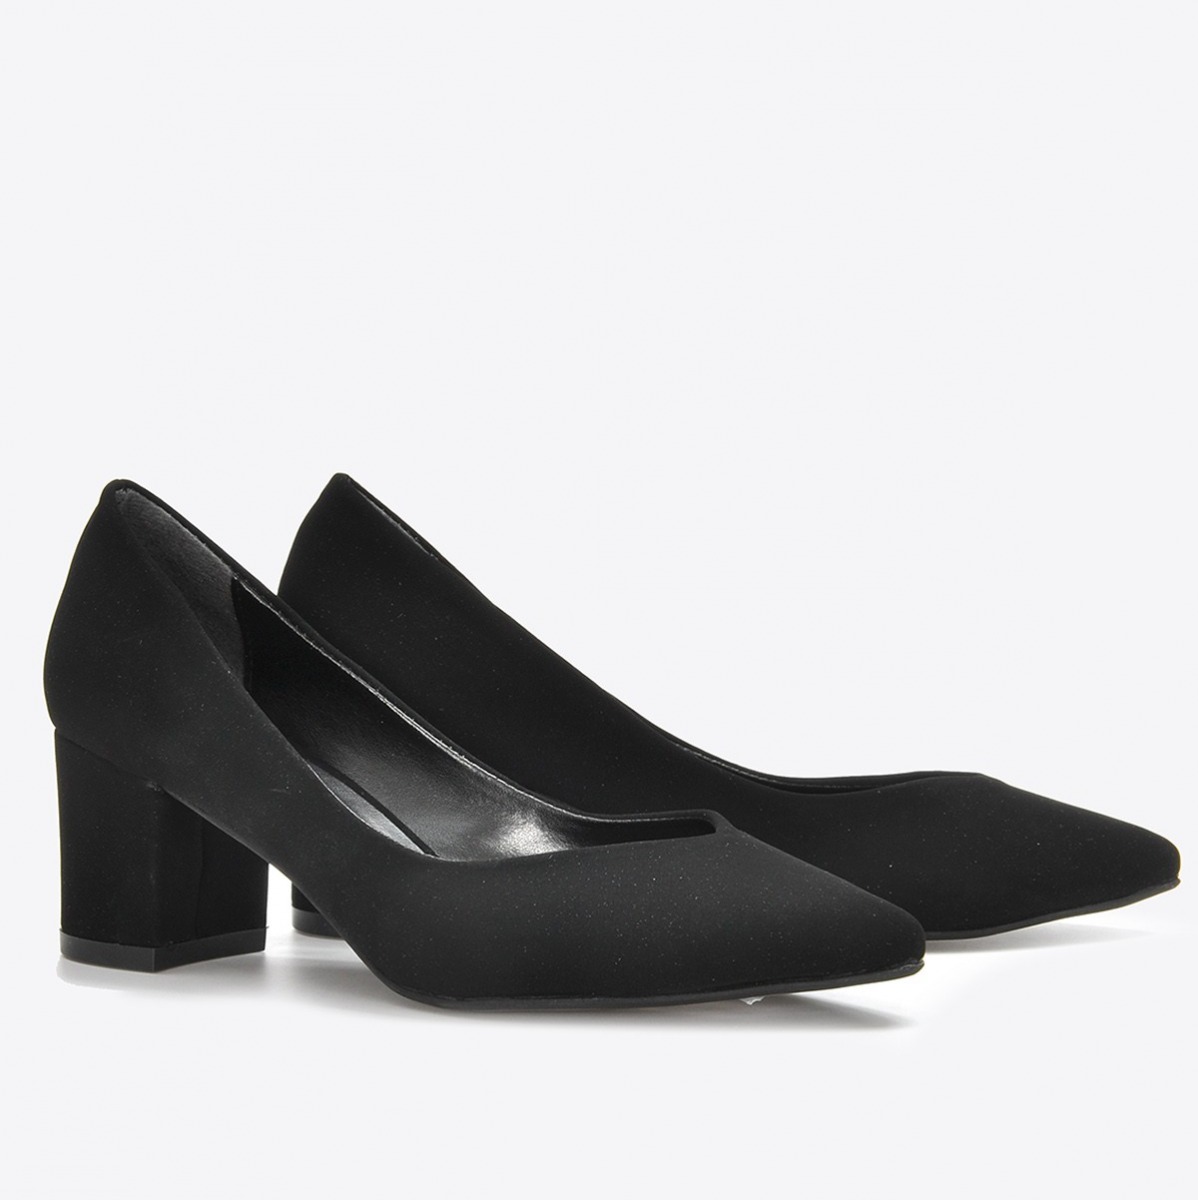 Flo Kadın Siyah Nubuk Klasik Topuklu Ayakkabı VZN21-041Y. 4